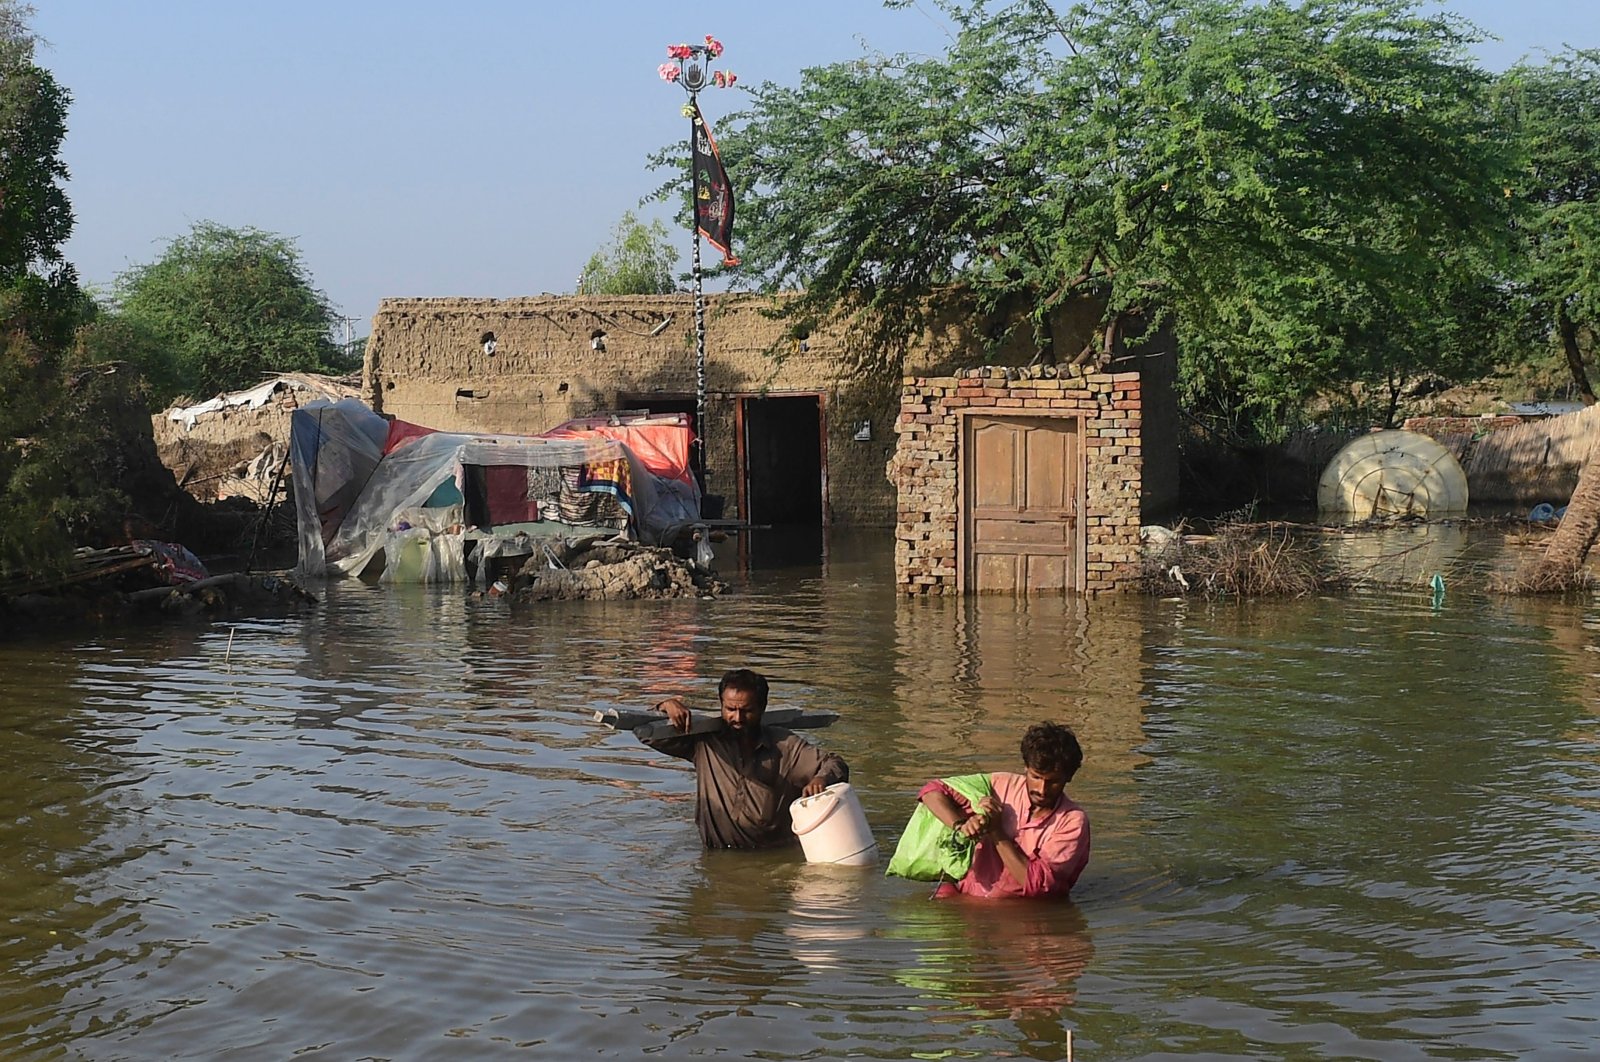 Korban tewas akibat bencana banjir di Pakistan mencapai 1.162